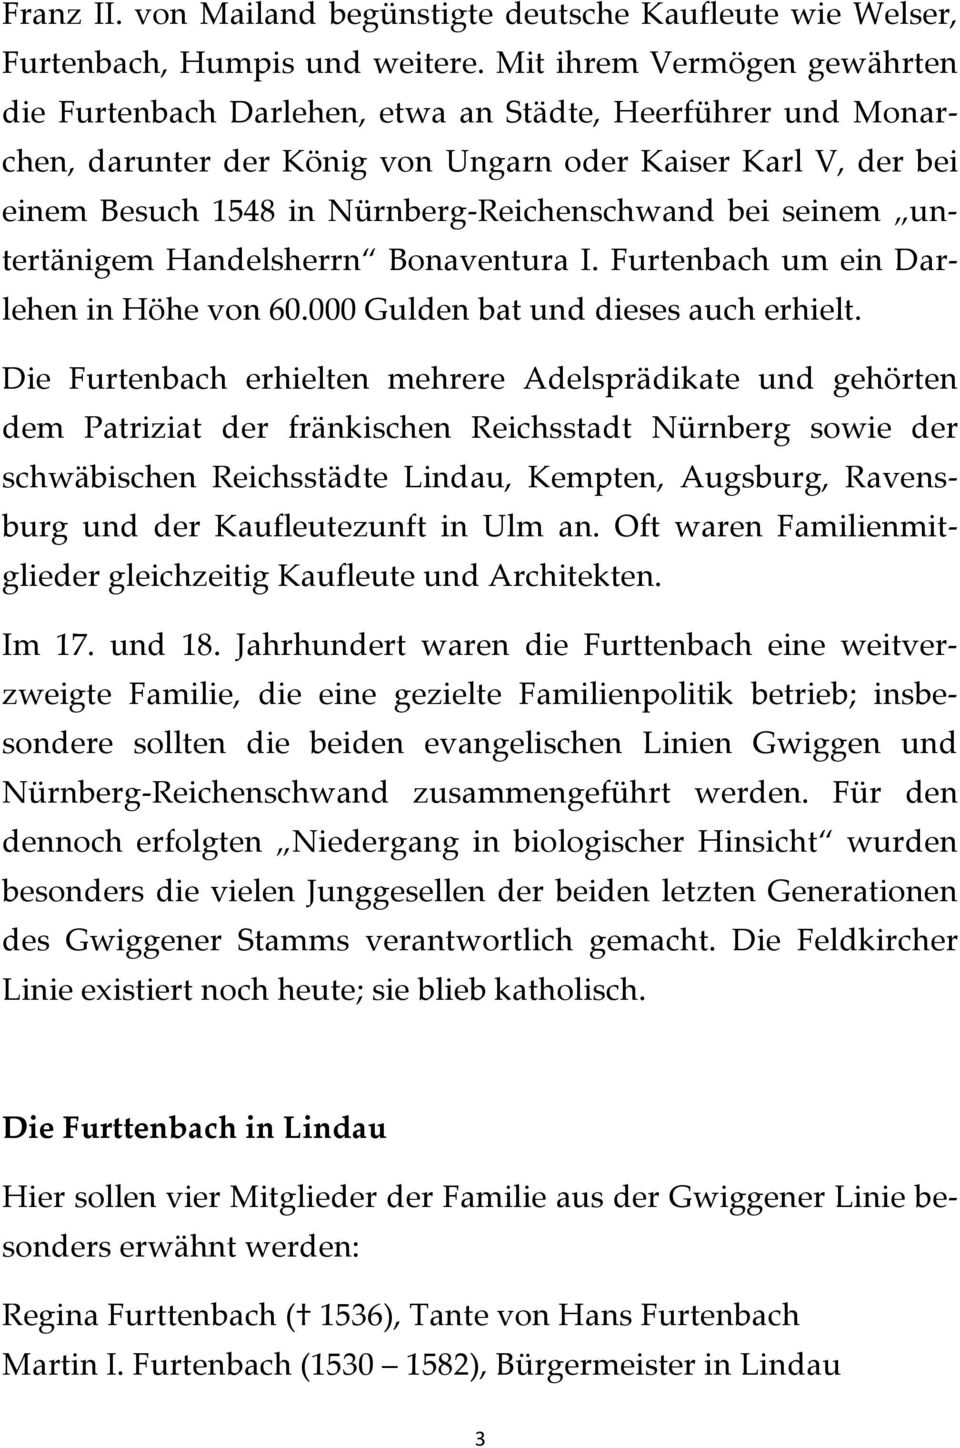 bei seinem untertänigem Handelsherrn Bonaventura I. Furtenbach um ein Darlehen in Höhe von 60.000 Gulden bat und dieses auch erhielt.